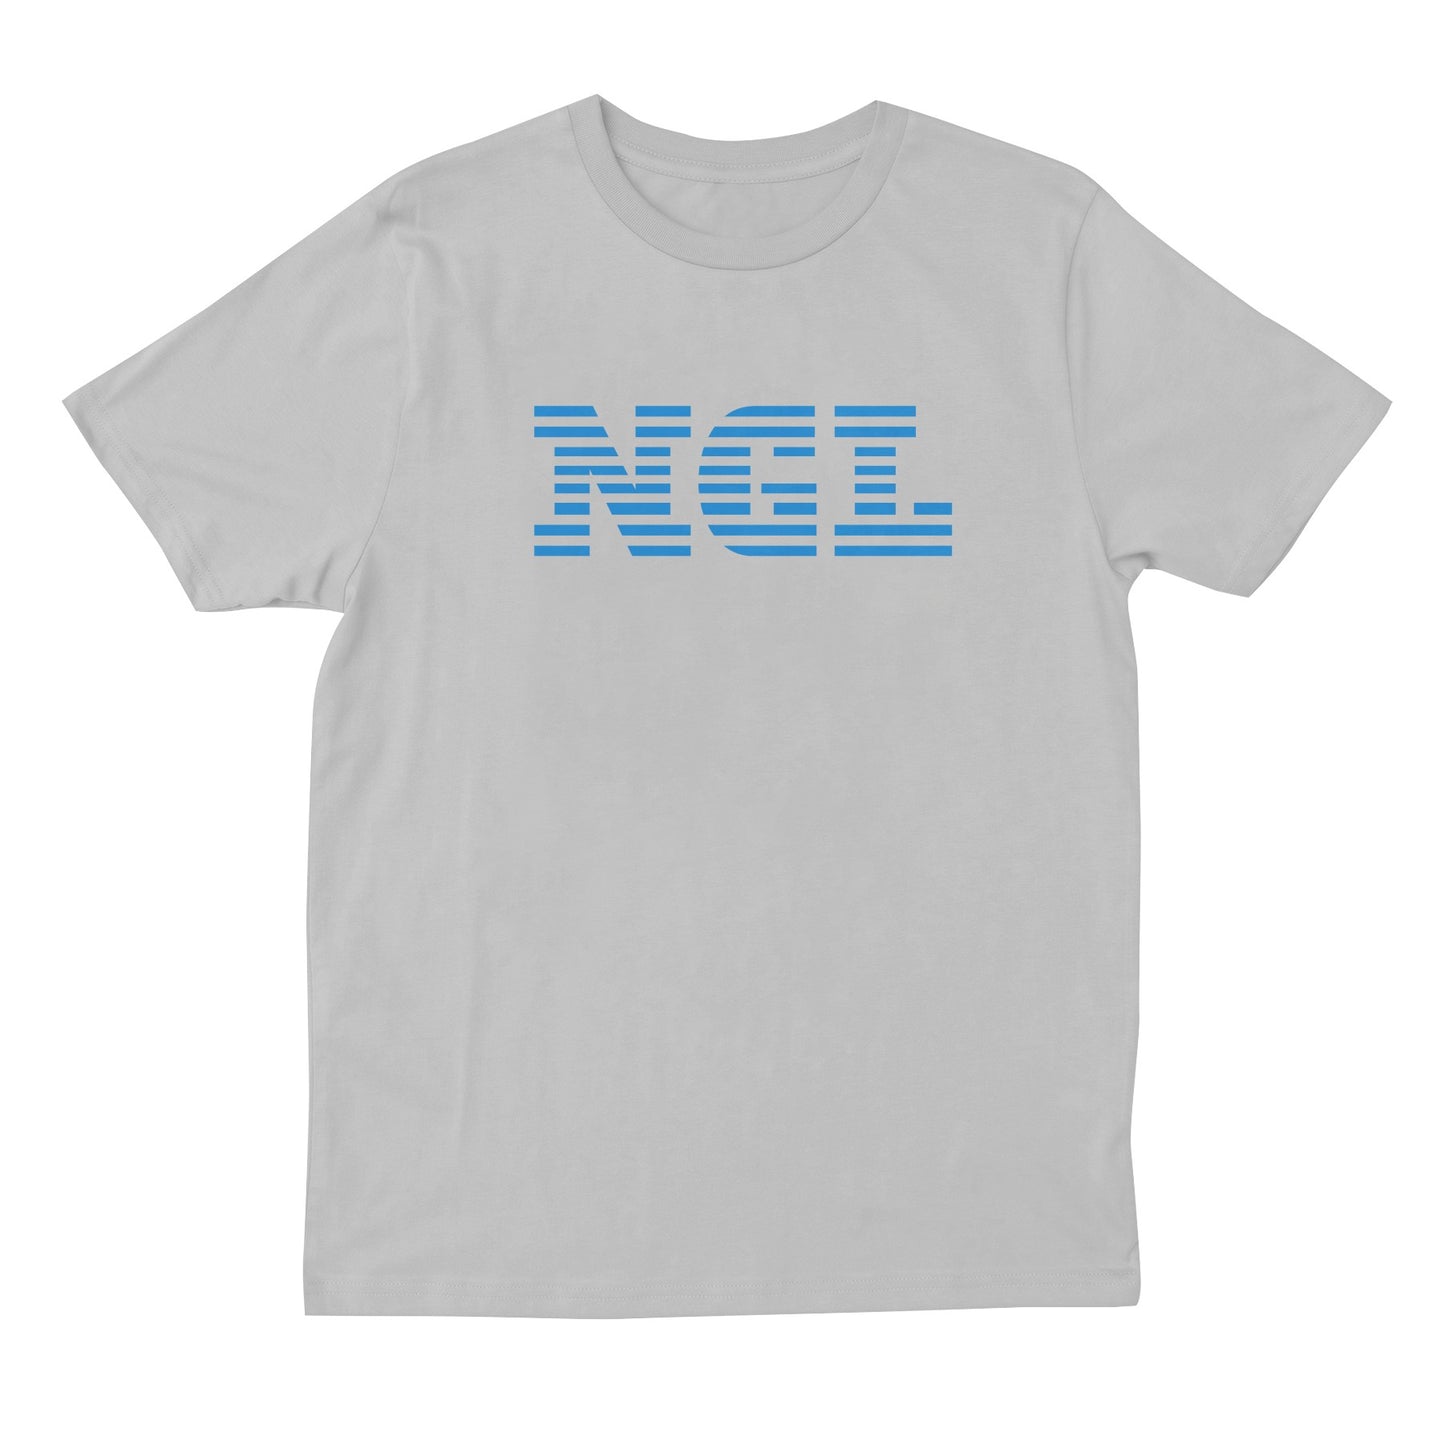 NGL T-shirt Black